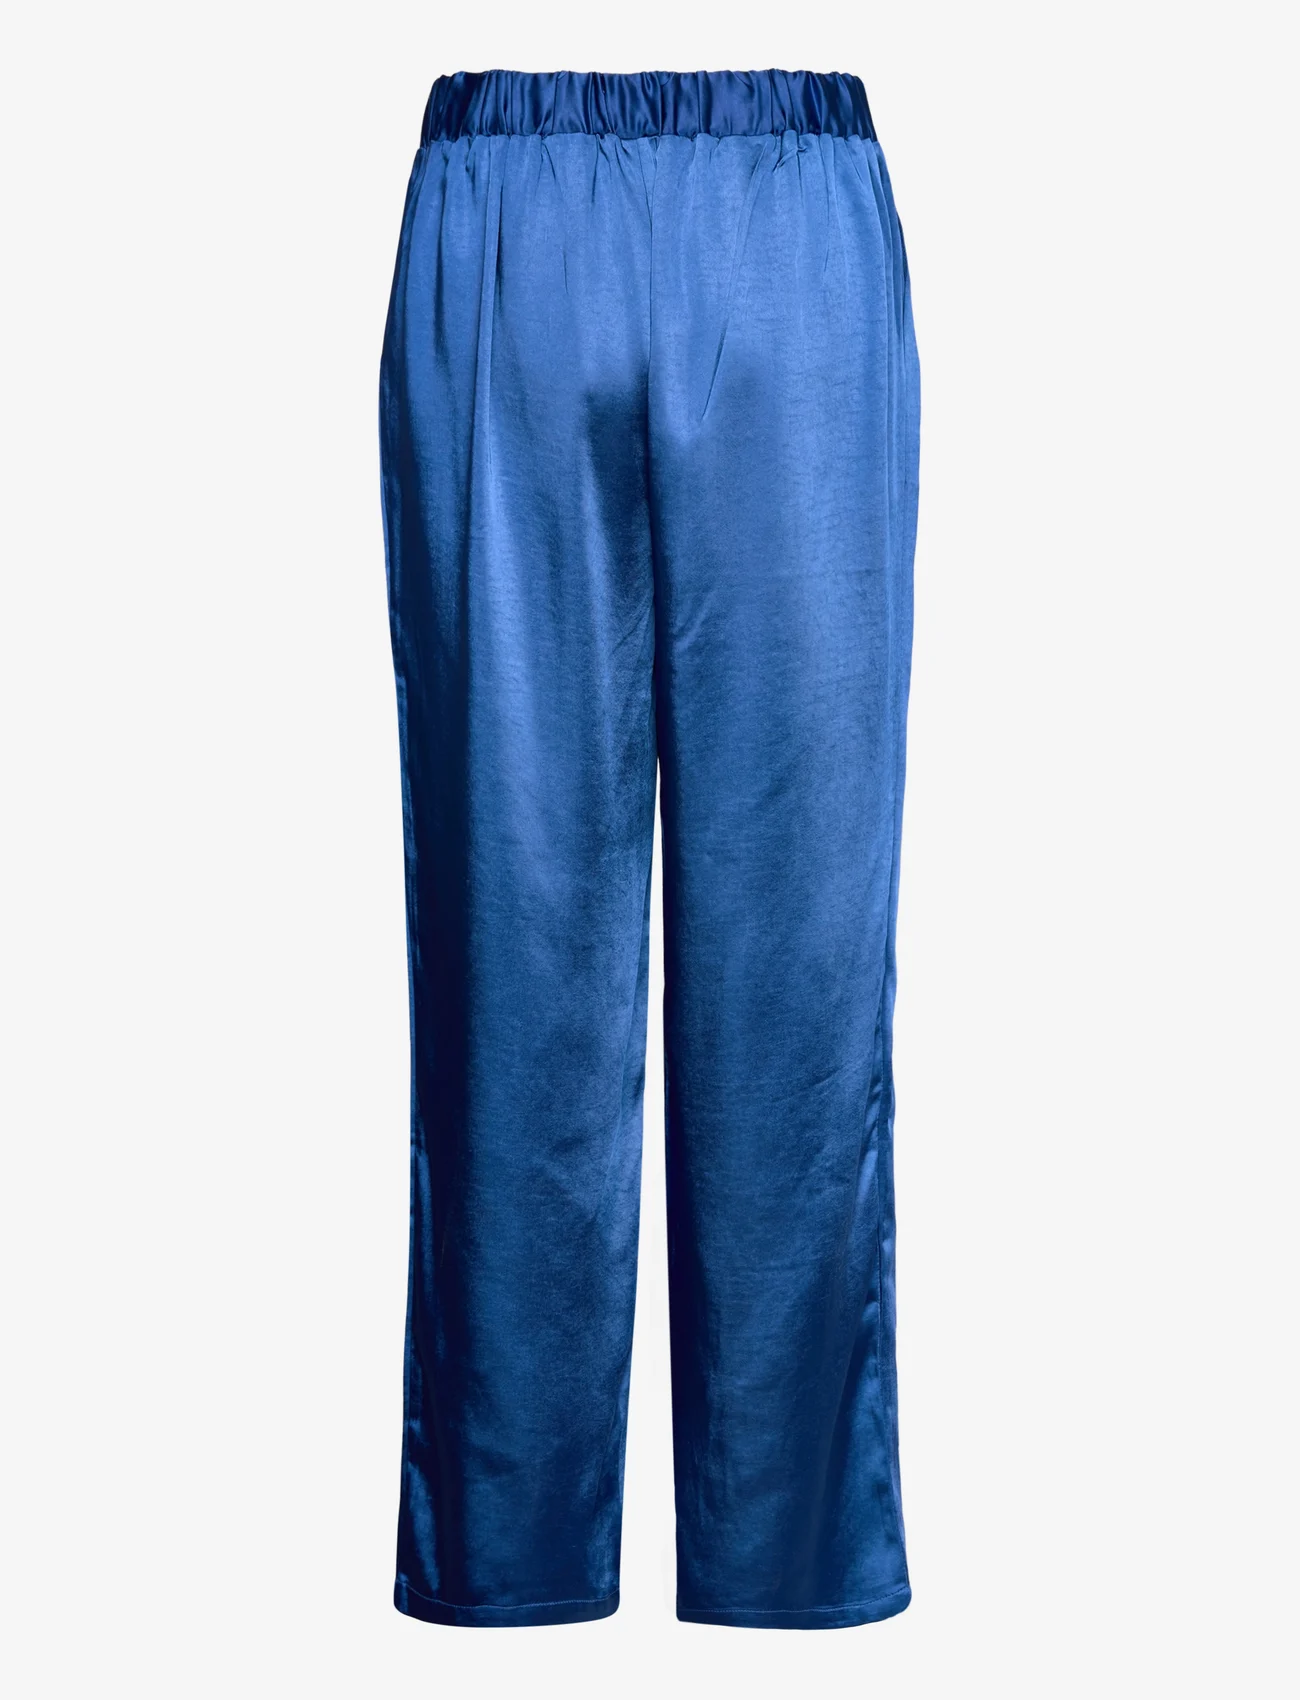 Lollys Laundry - Henry Pants - leveälahkeiset housut - neon blue - 1